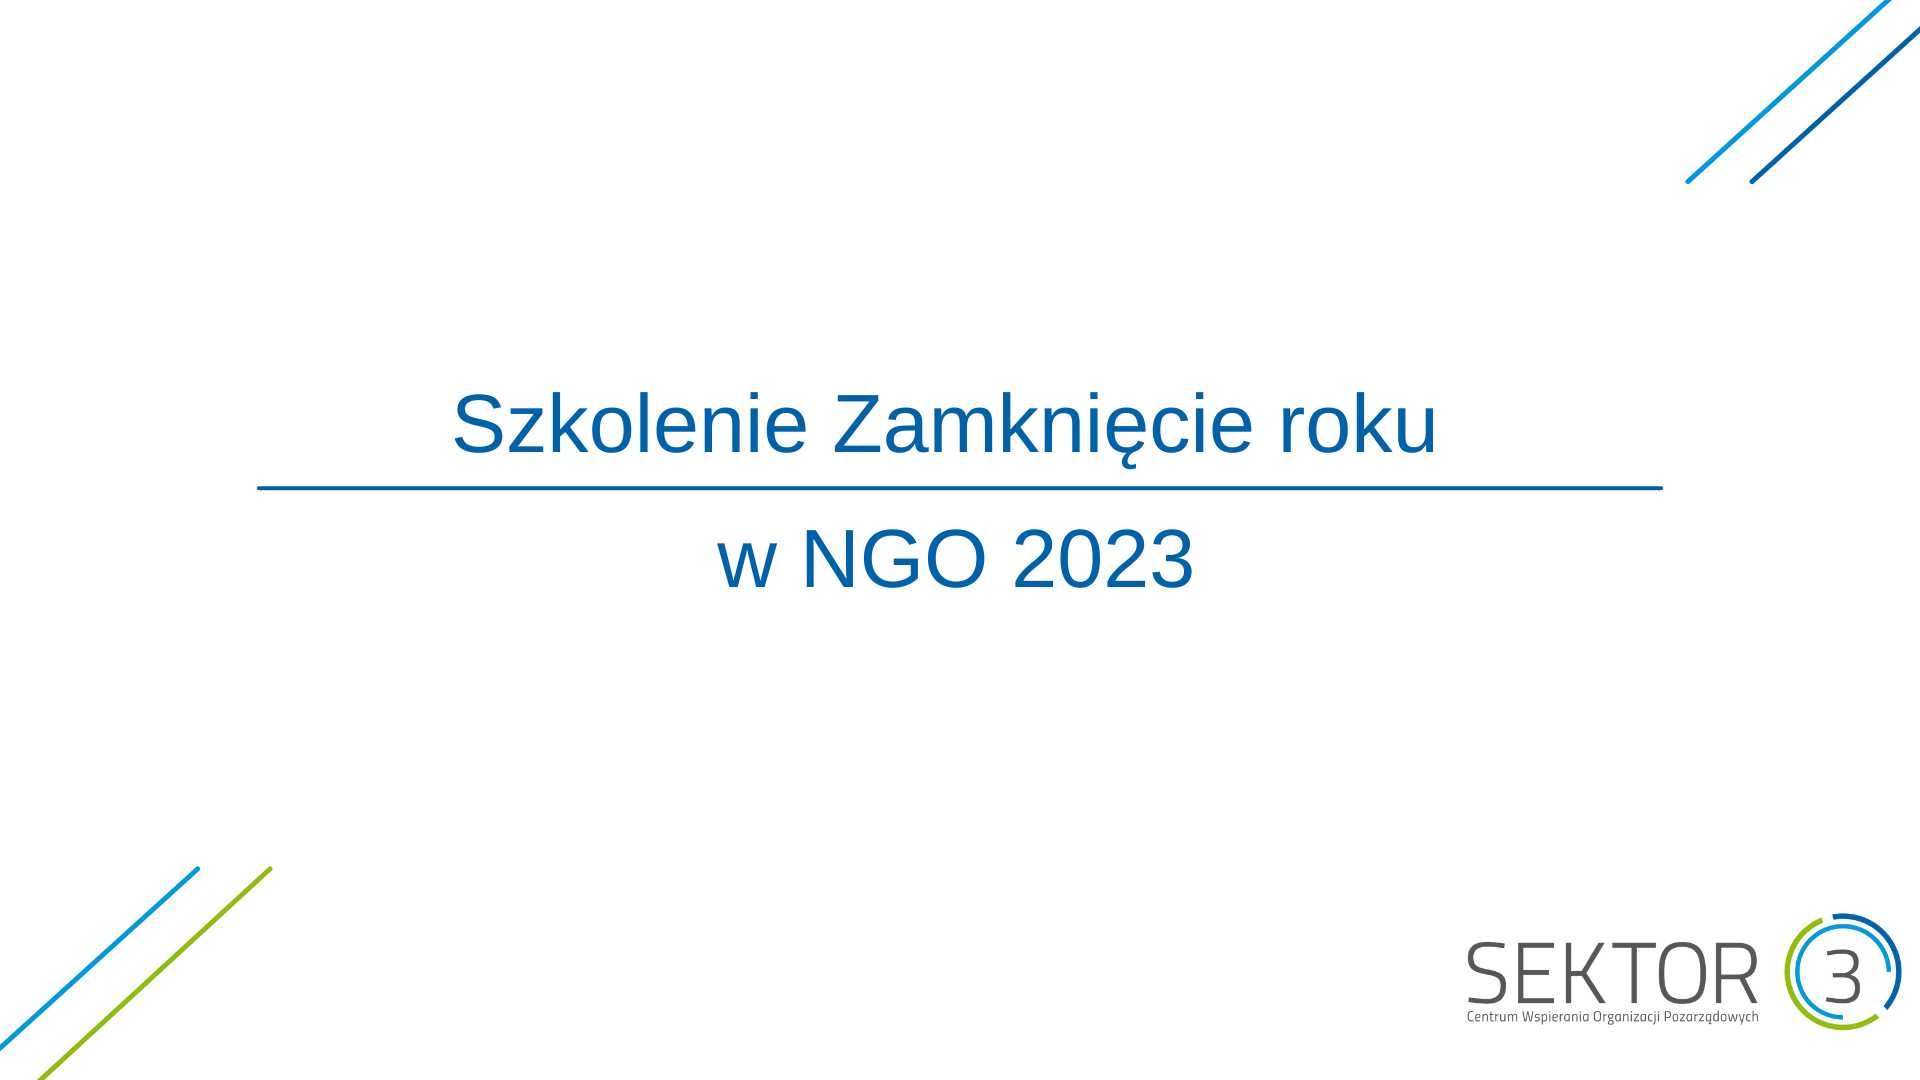 Plakat szkolenia - na białym tle tytuł szkolenia - Zamknięcie roku w NGO 2023, w rogach wektory skierowane ukośnie do środka oraz w dolnym leweym rogu logo fundacji Sektor 3